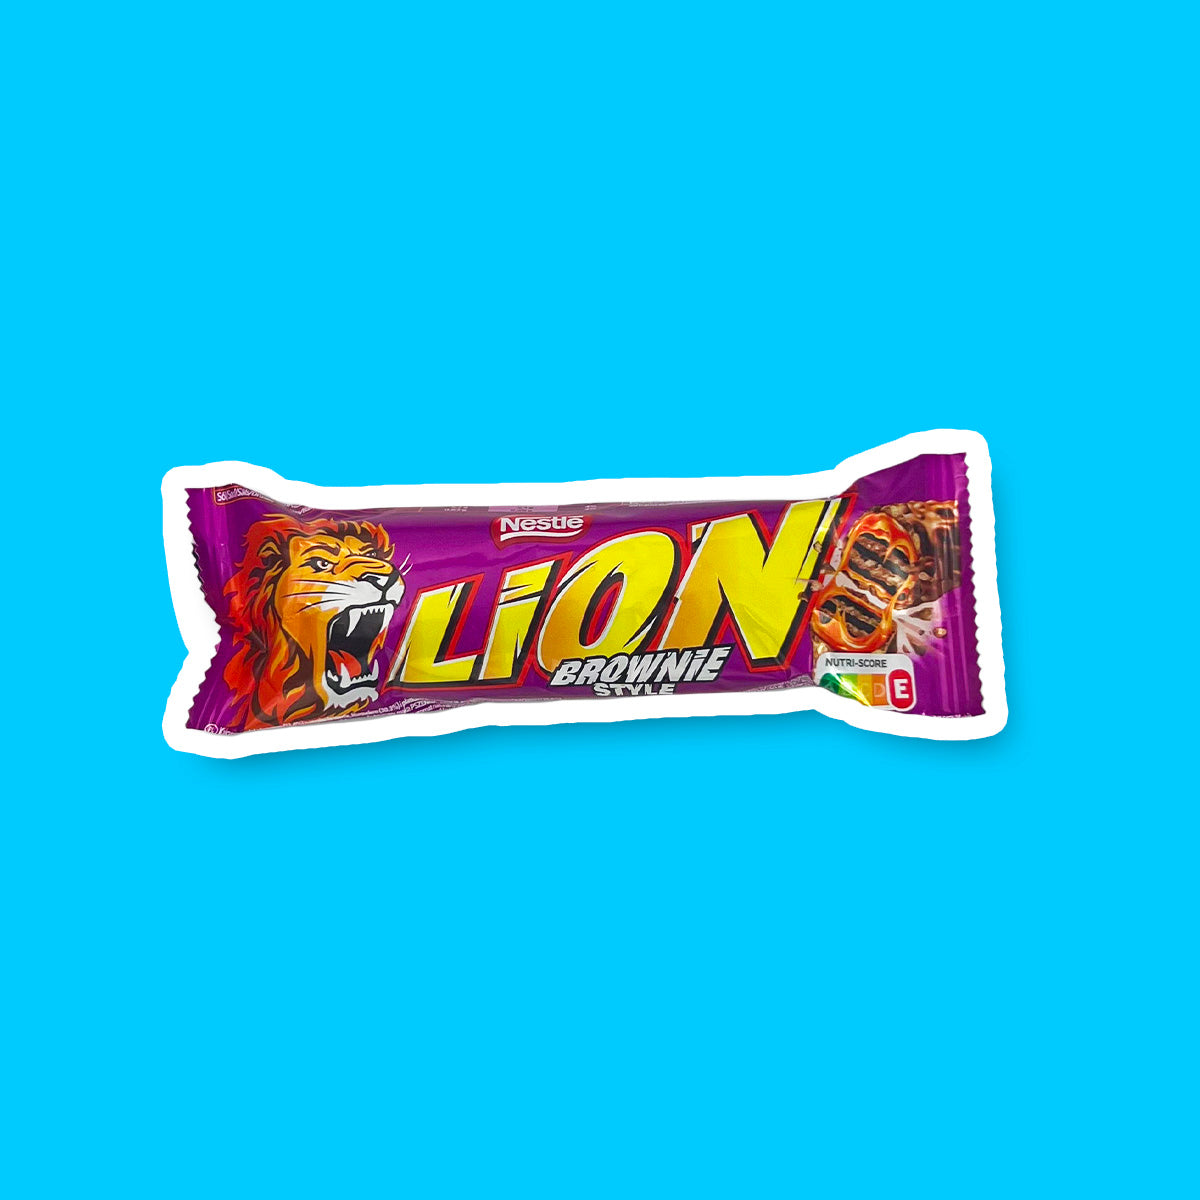 Un paquet mauve sur fond bleu avec à gauche un lion qui rugit, au milieu il est écrit « LION » en jaune et à droite un Lion Brownie coupé en 2 